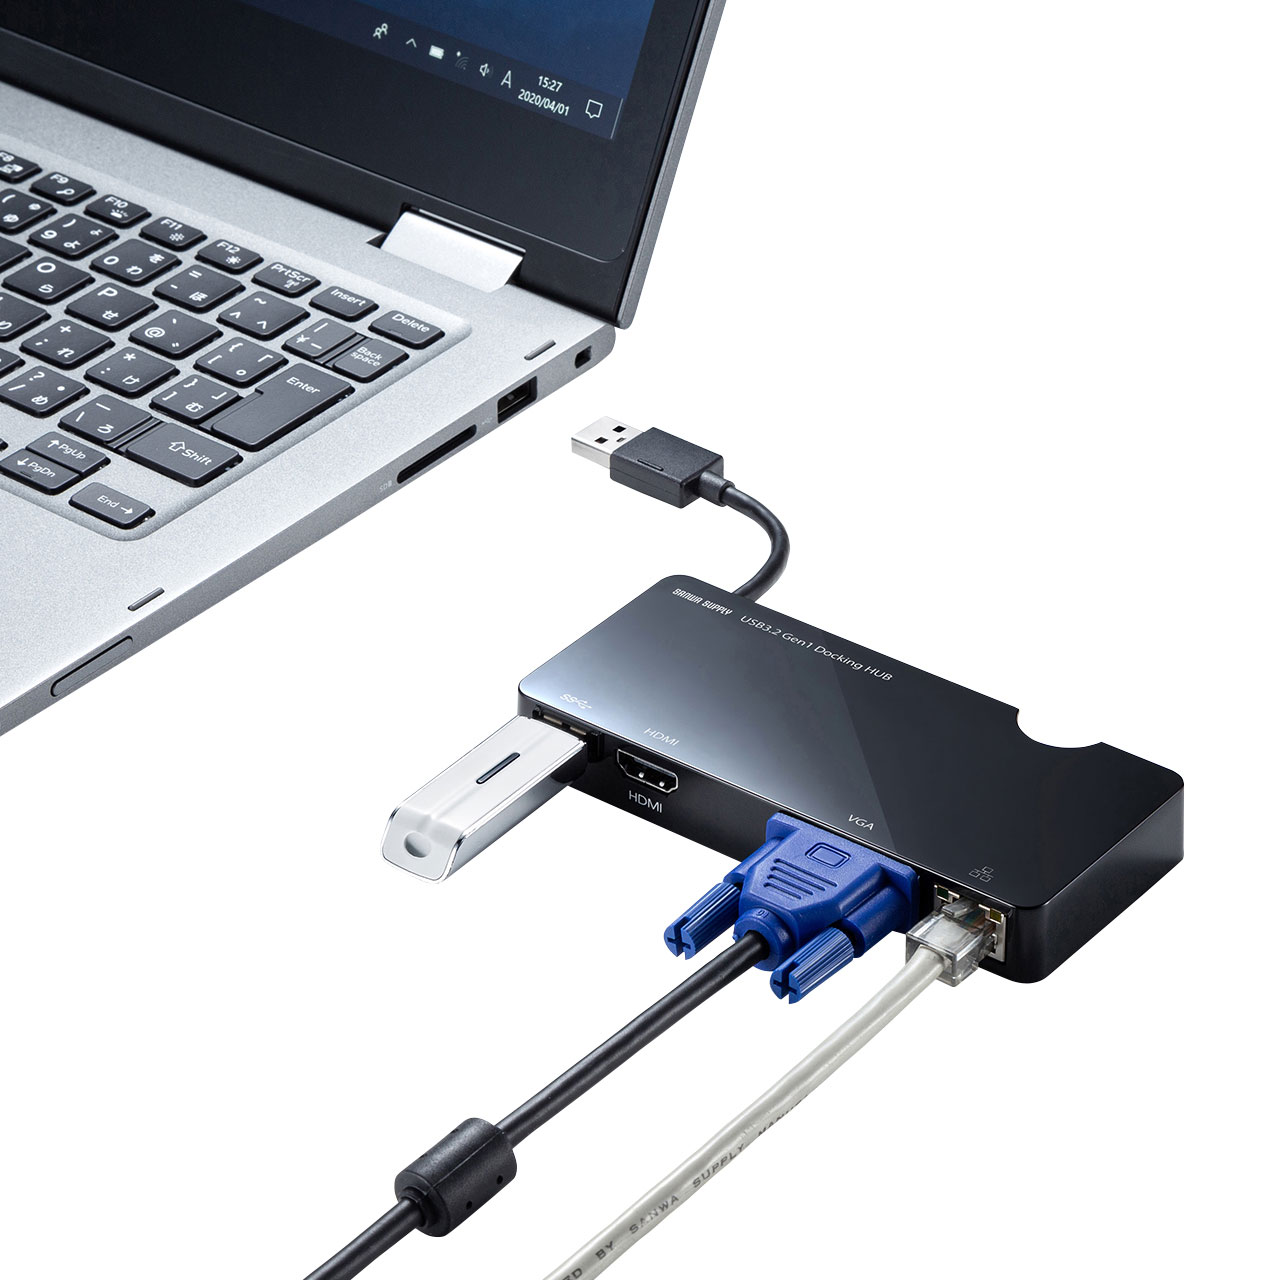 映像出力が可能なUSB3.2Gen1搭載のドッキングステーション、USBハブを 